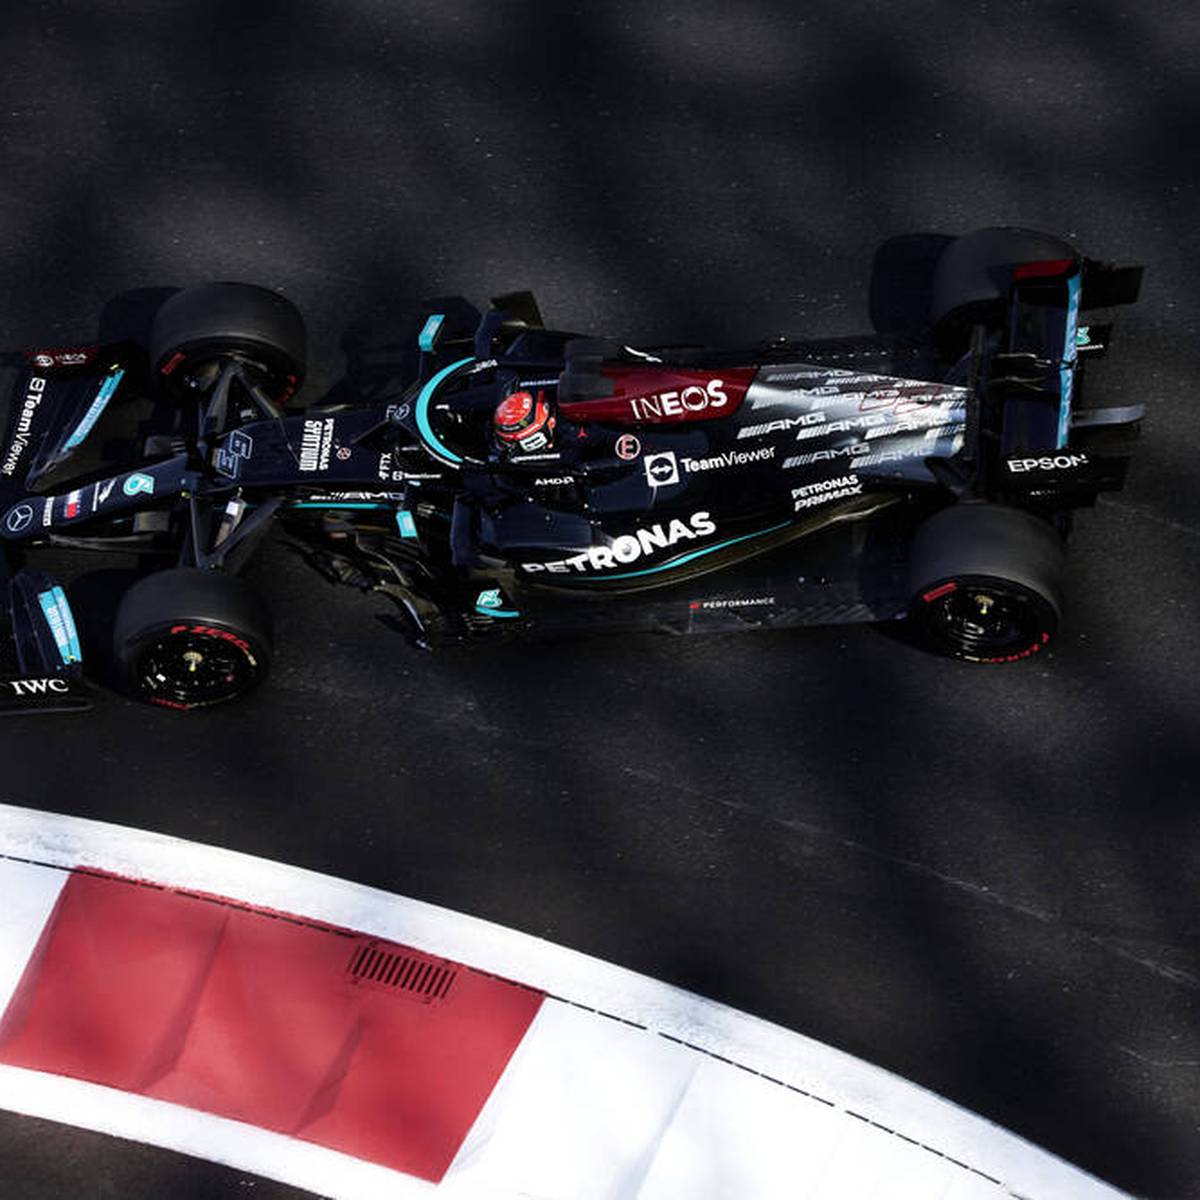 Konstrukteursweltmeister Mercedes gibt den Termin für die Vorstellung des neuen Boliden bekannt. Wird Lewis Hamilton den neuen Renner überhaupt steuern?